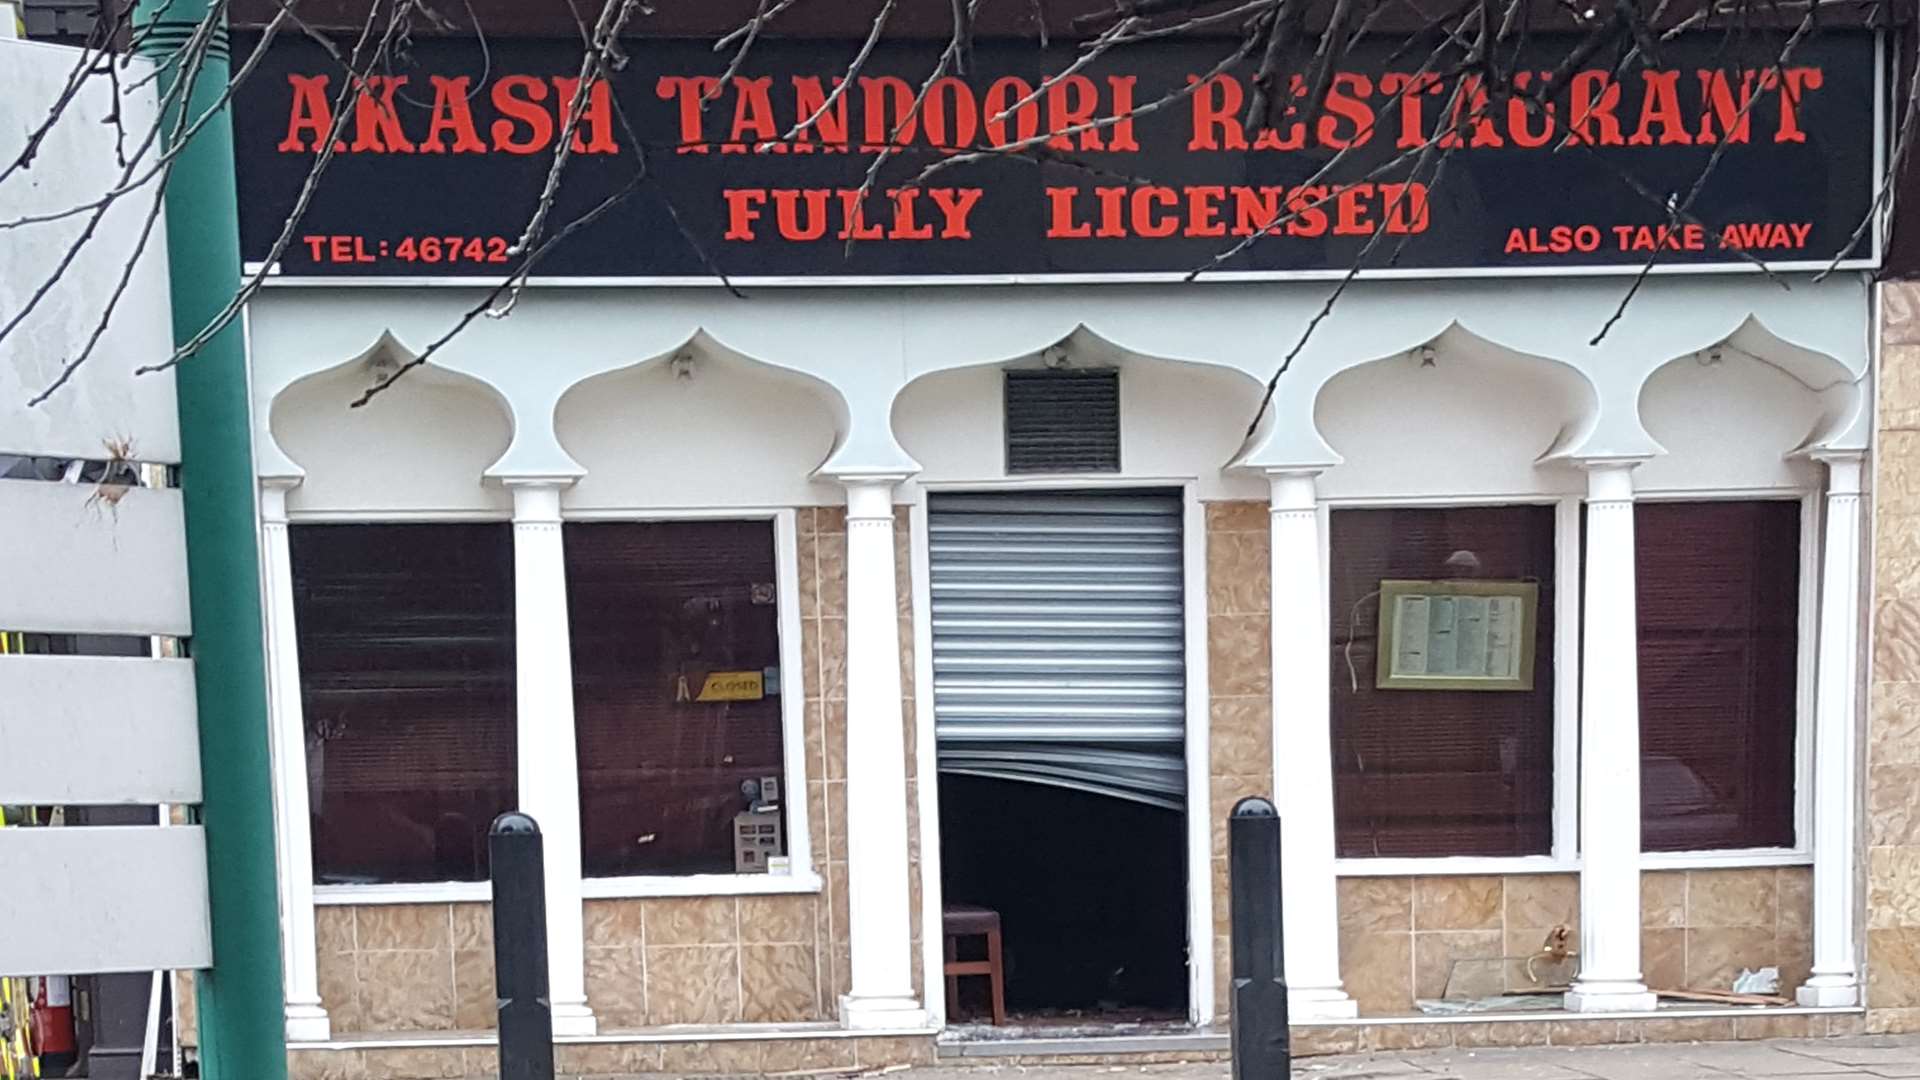 The fire was in the Akash Tandoori restaurant. Picture: Gary Muffett